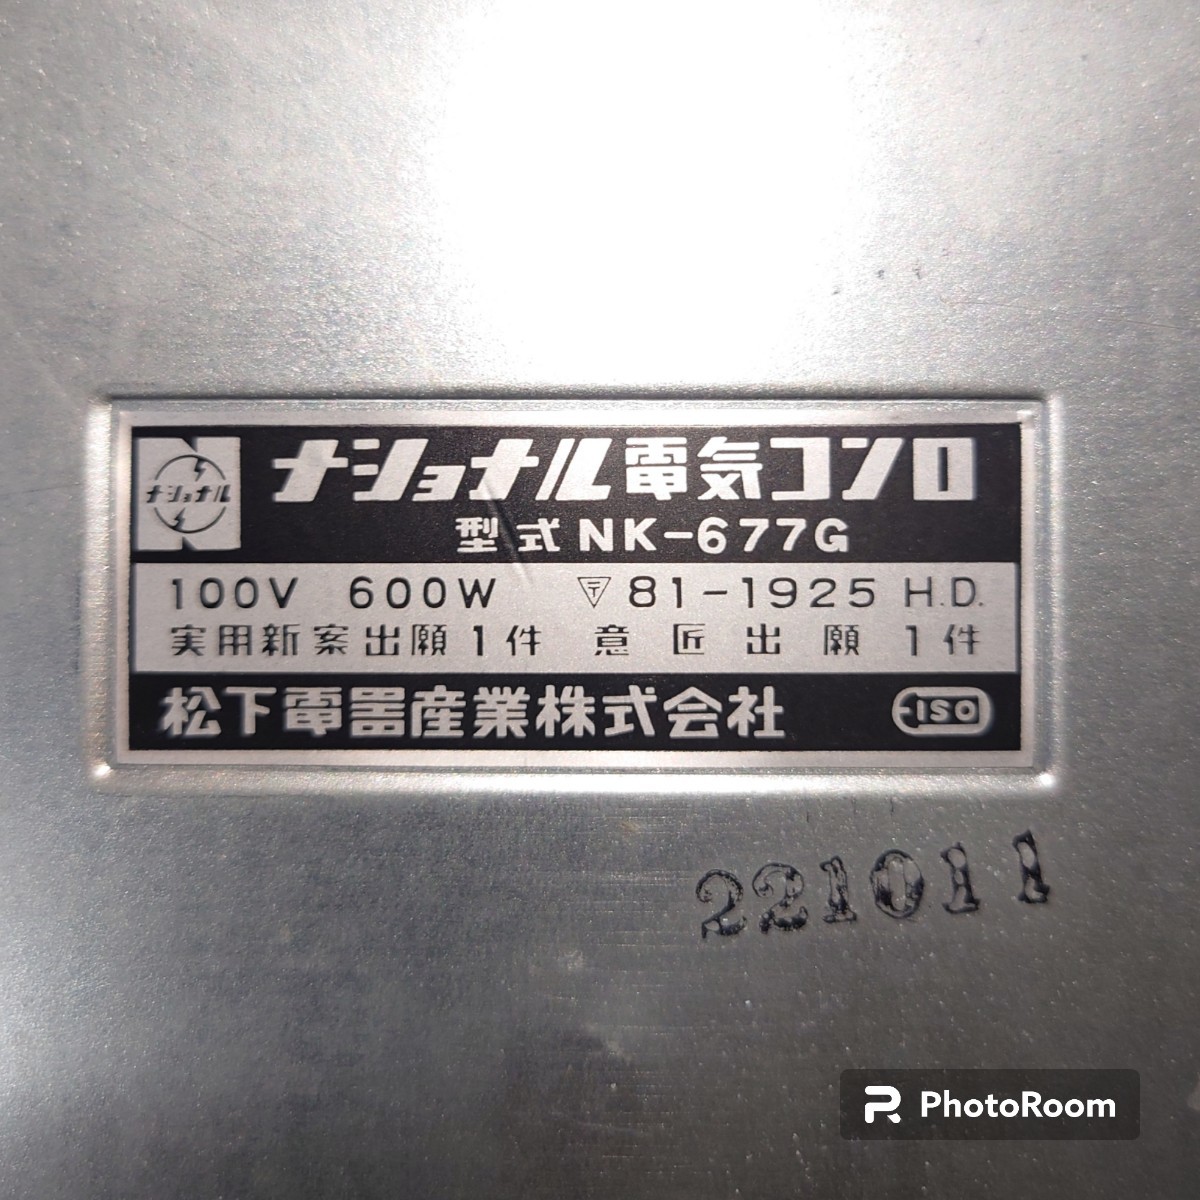 【未使用】 ナショナル 電気コンロ NK-677G 実用 600w 角形 五徳付き 昭和レトロ アンティーク コレクションの画像6